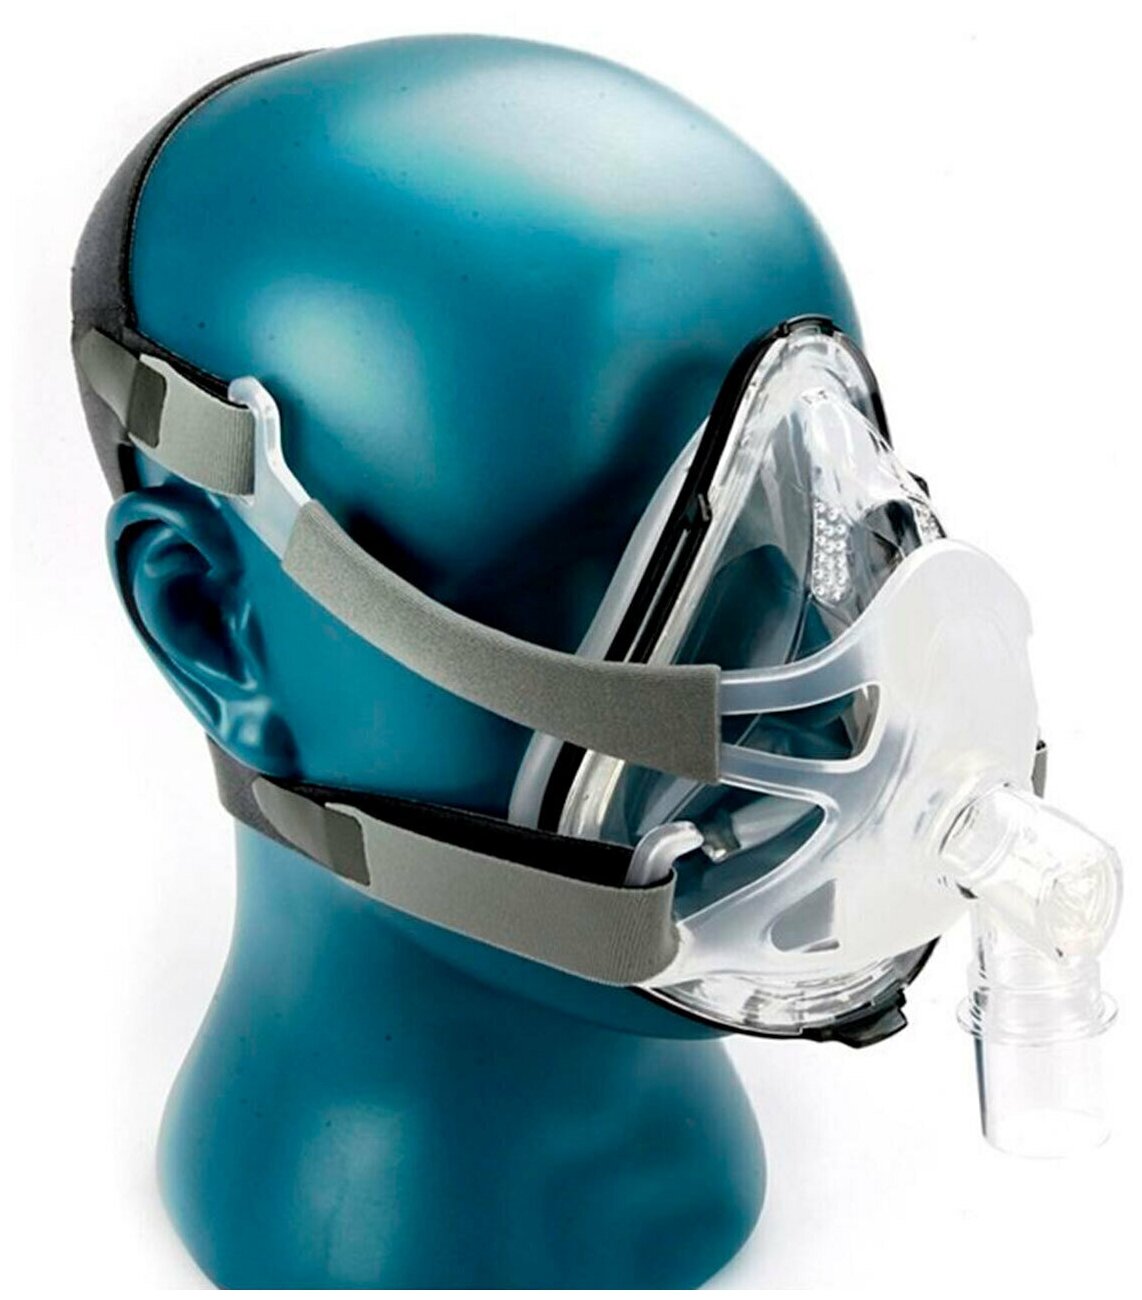 Маска лицевая Full Face Mask (BMC-FM1A) для бипап / СИПАП терапии при храпе и апноэ размер L